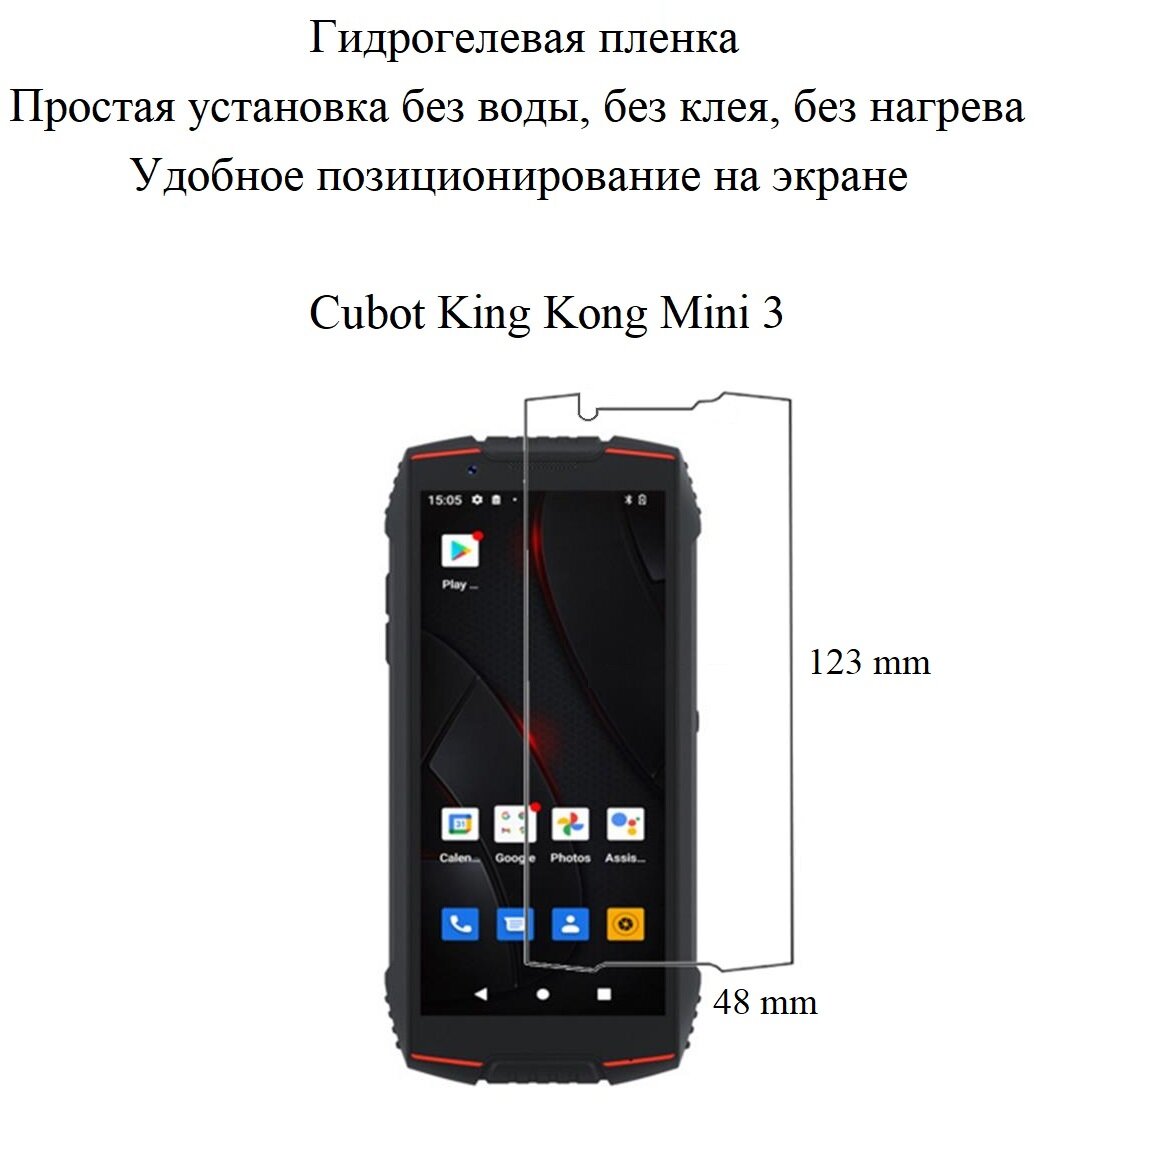 Глянцевая гидрогелевая пленка hoco. на экран смартфона CUBOT King Kong mini 3